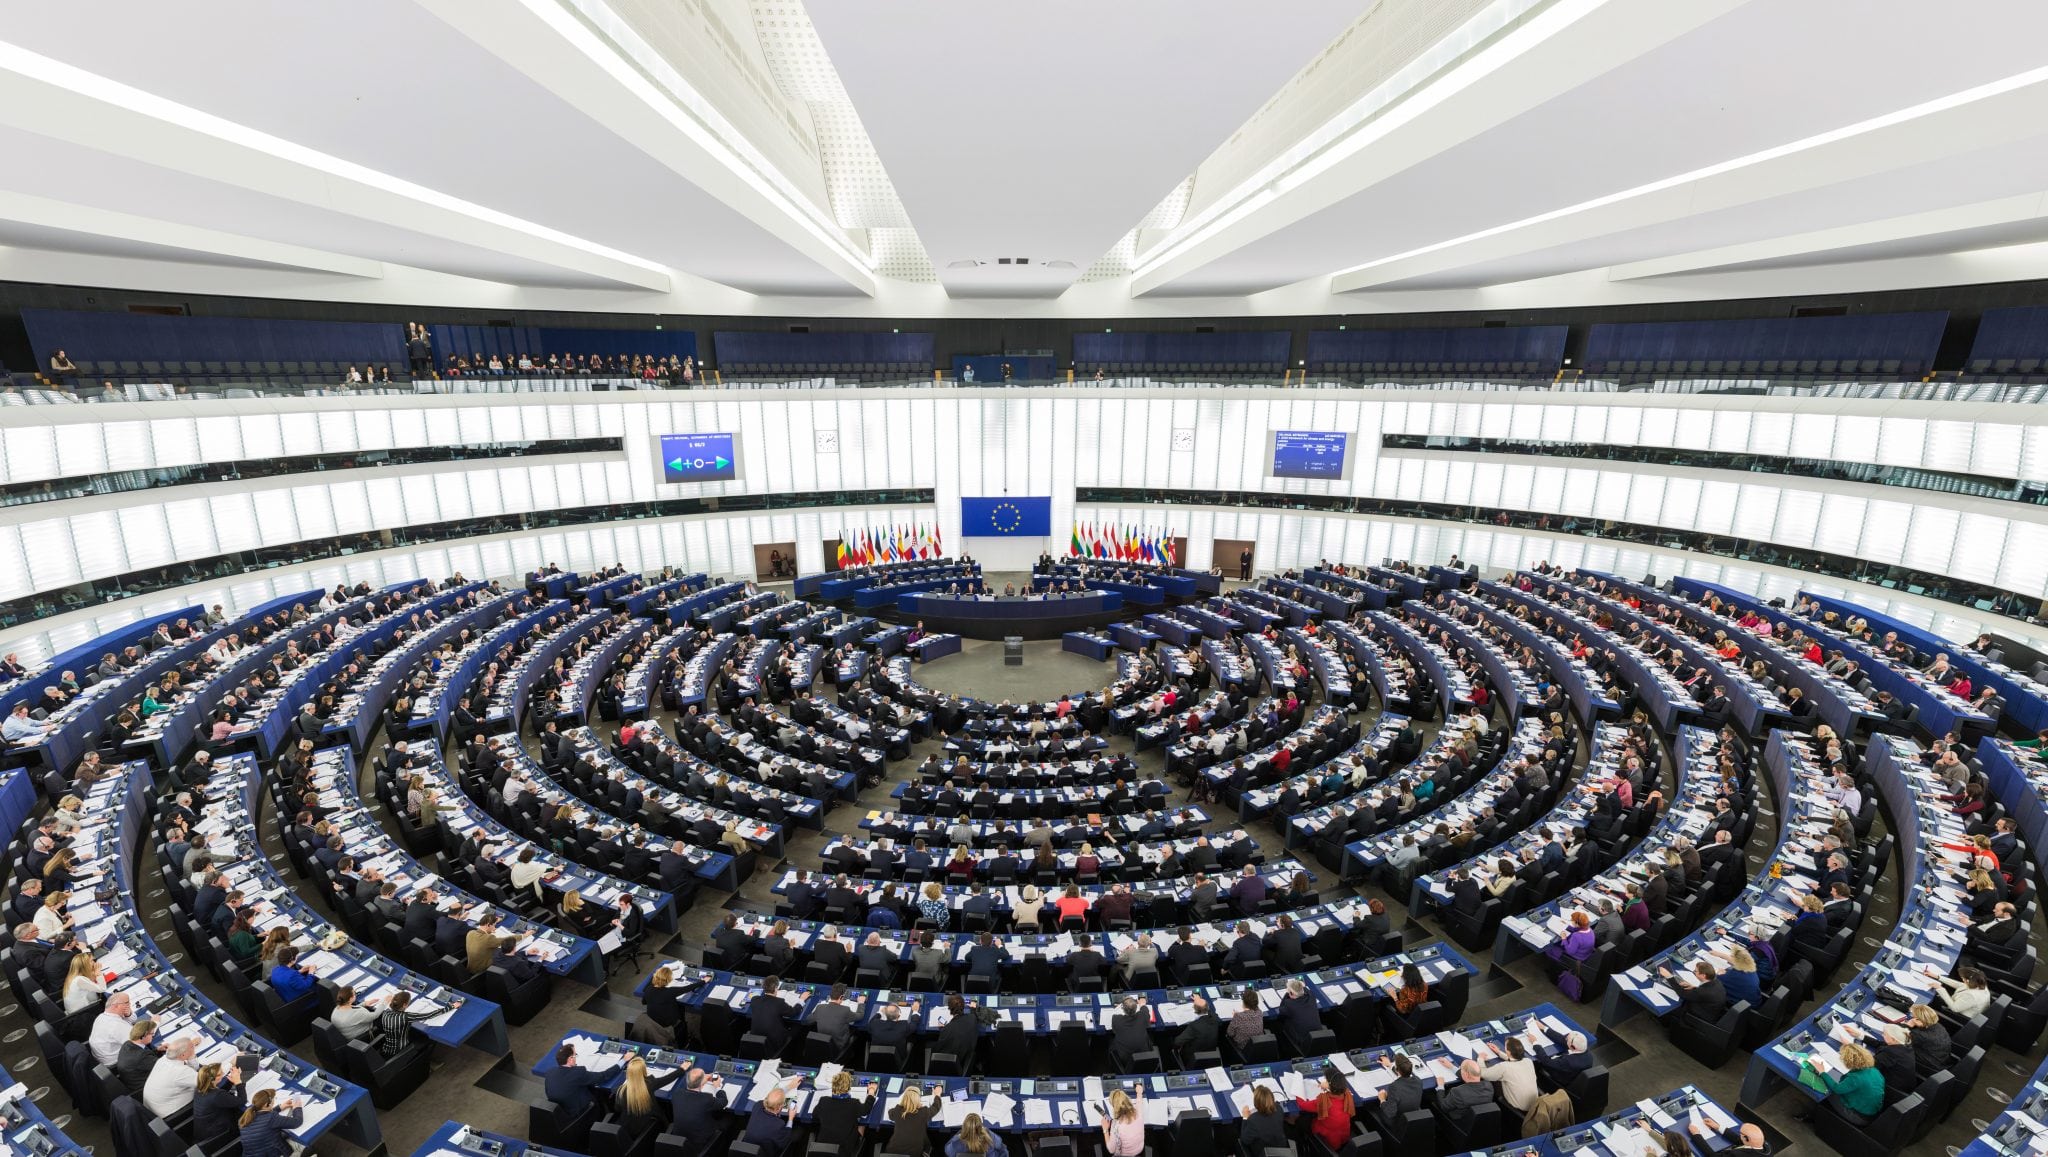 The European ParliamentÃ¢â¬â¢s hemicycle (debating chamber) during a plenary session in Strasbourg